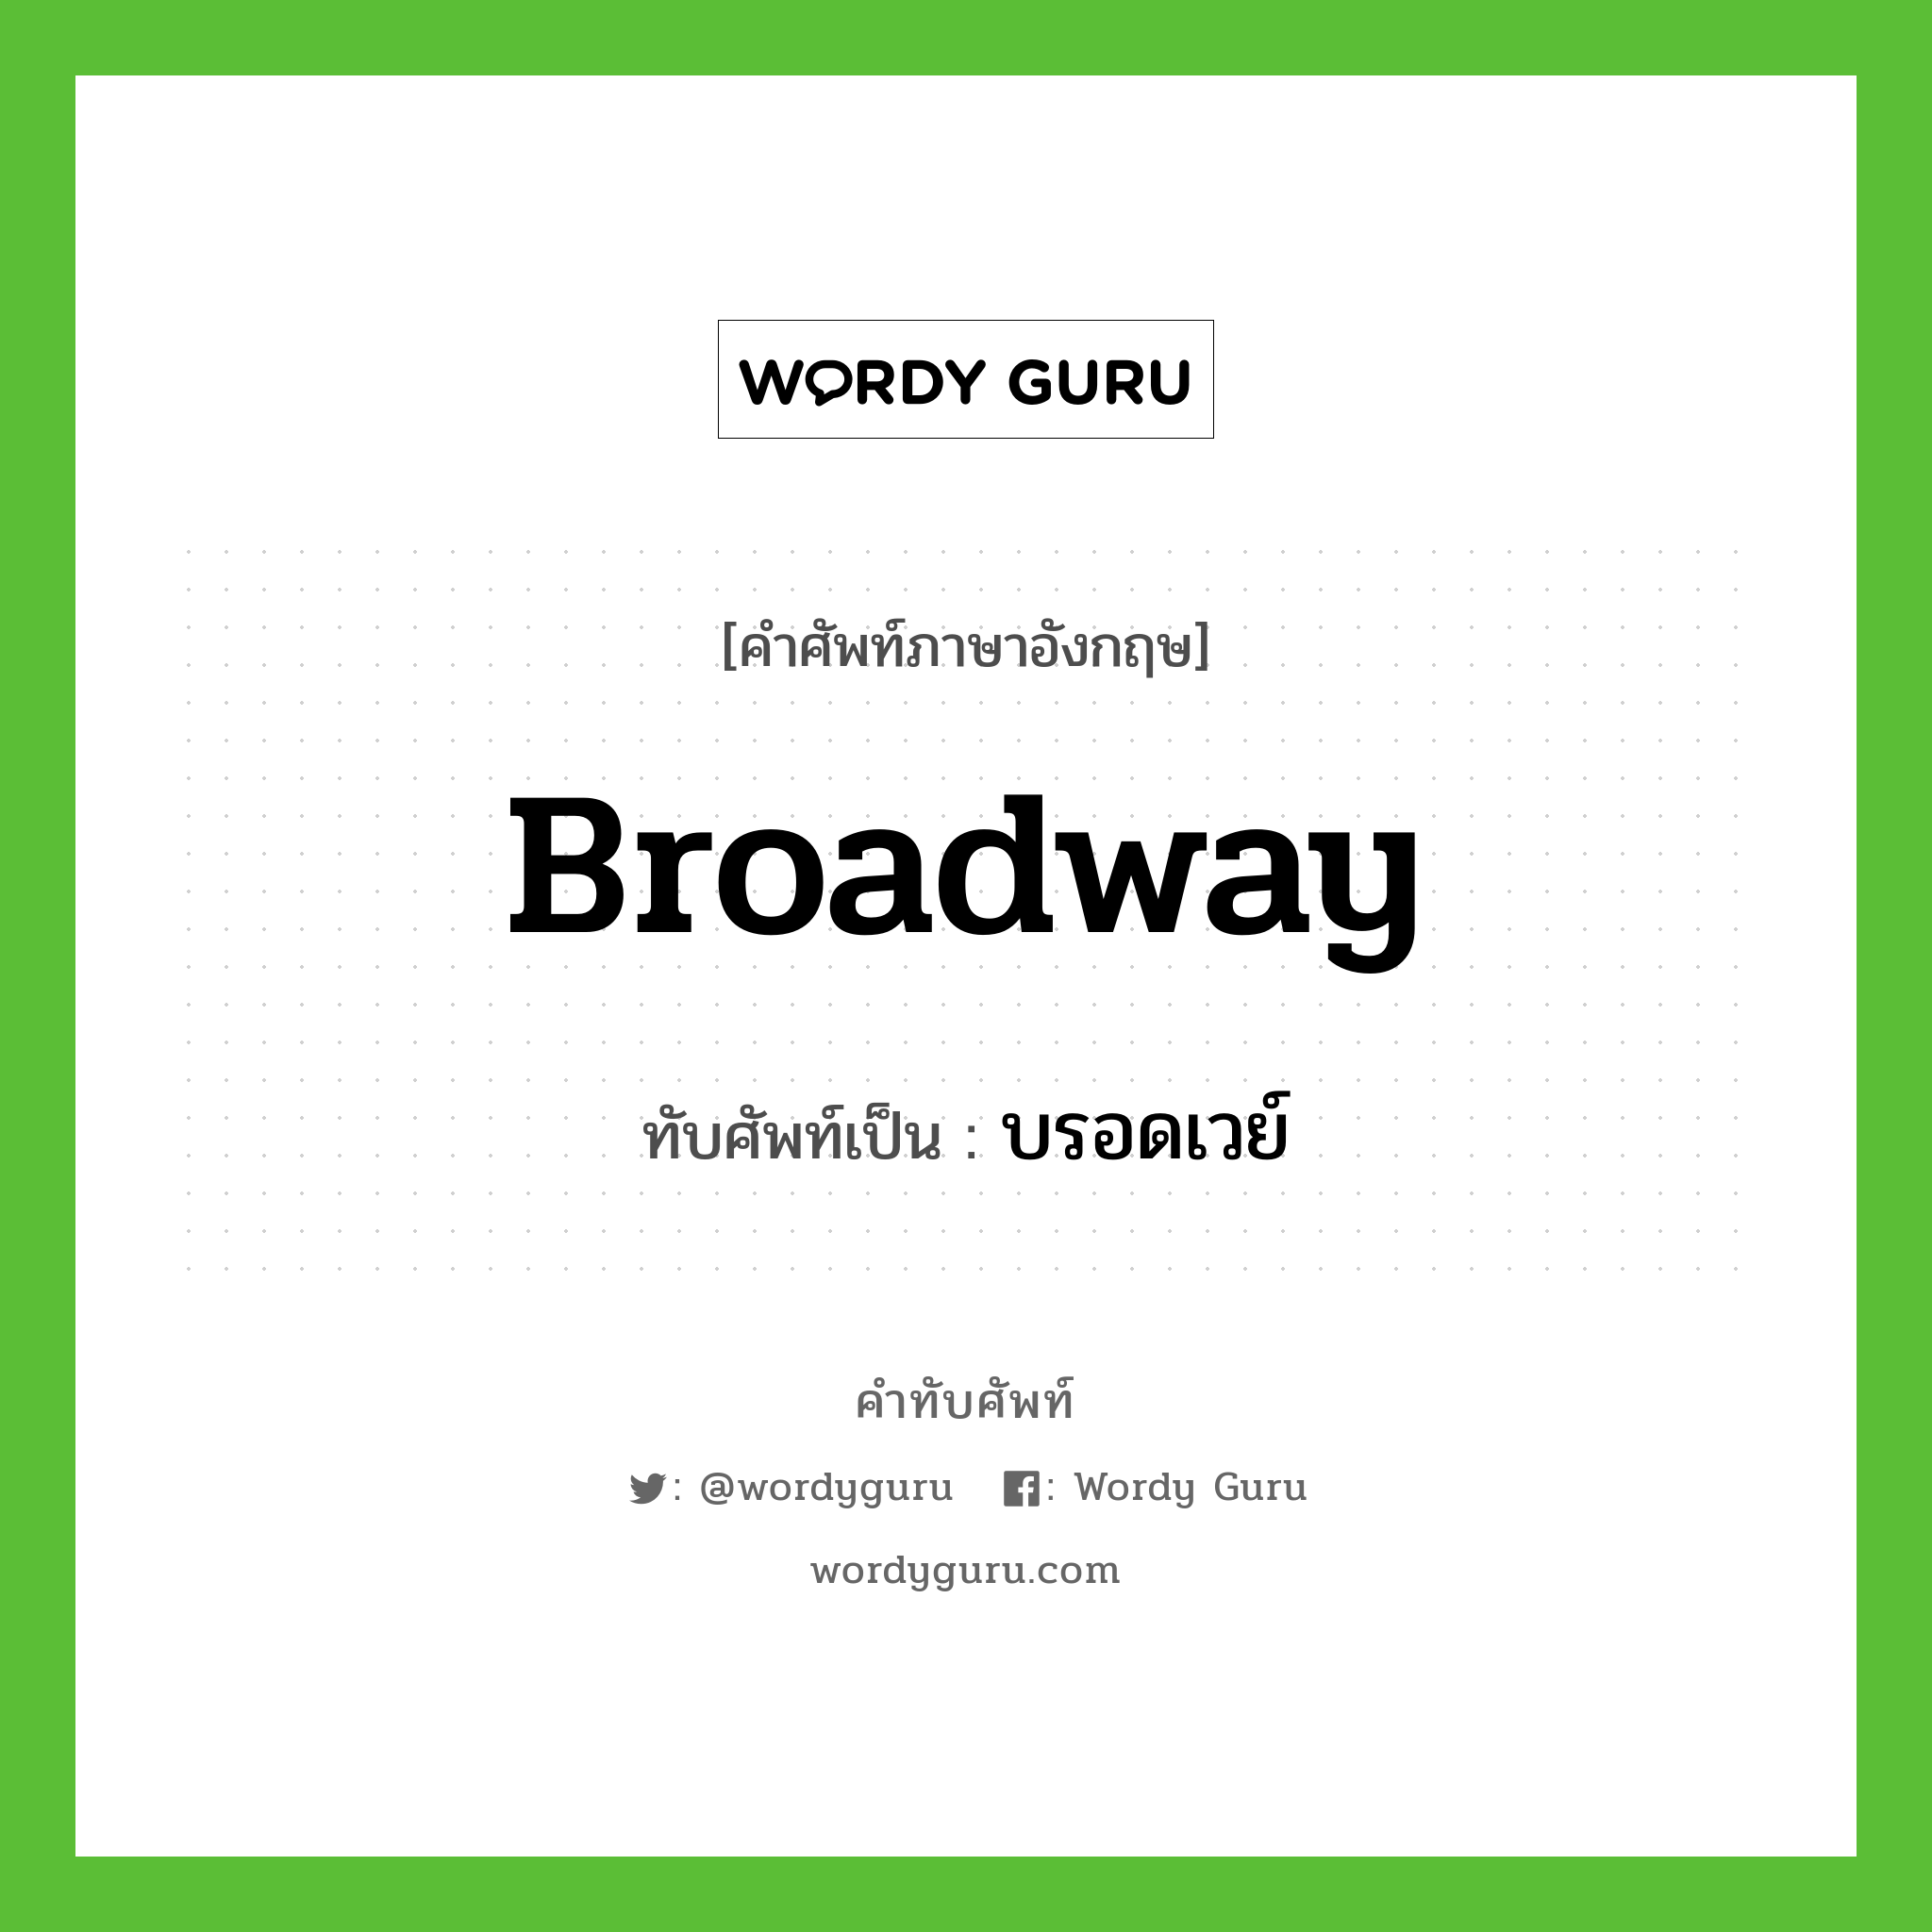 Broadway เขียนเป็นคำไทยว่าอะไร?, คำศัพท์ภาษาอังกฤษ Broadway ทับศัพท์เป็น บรอดเวย์